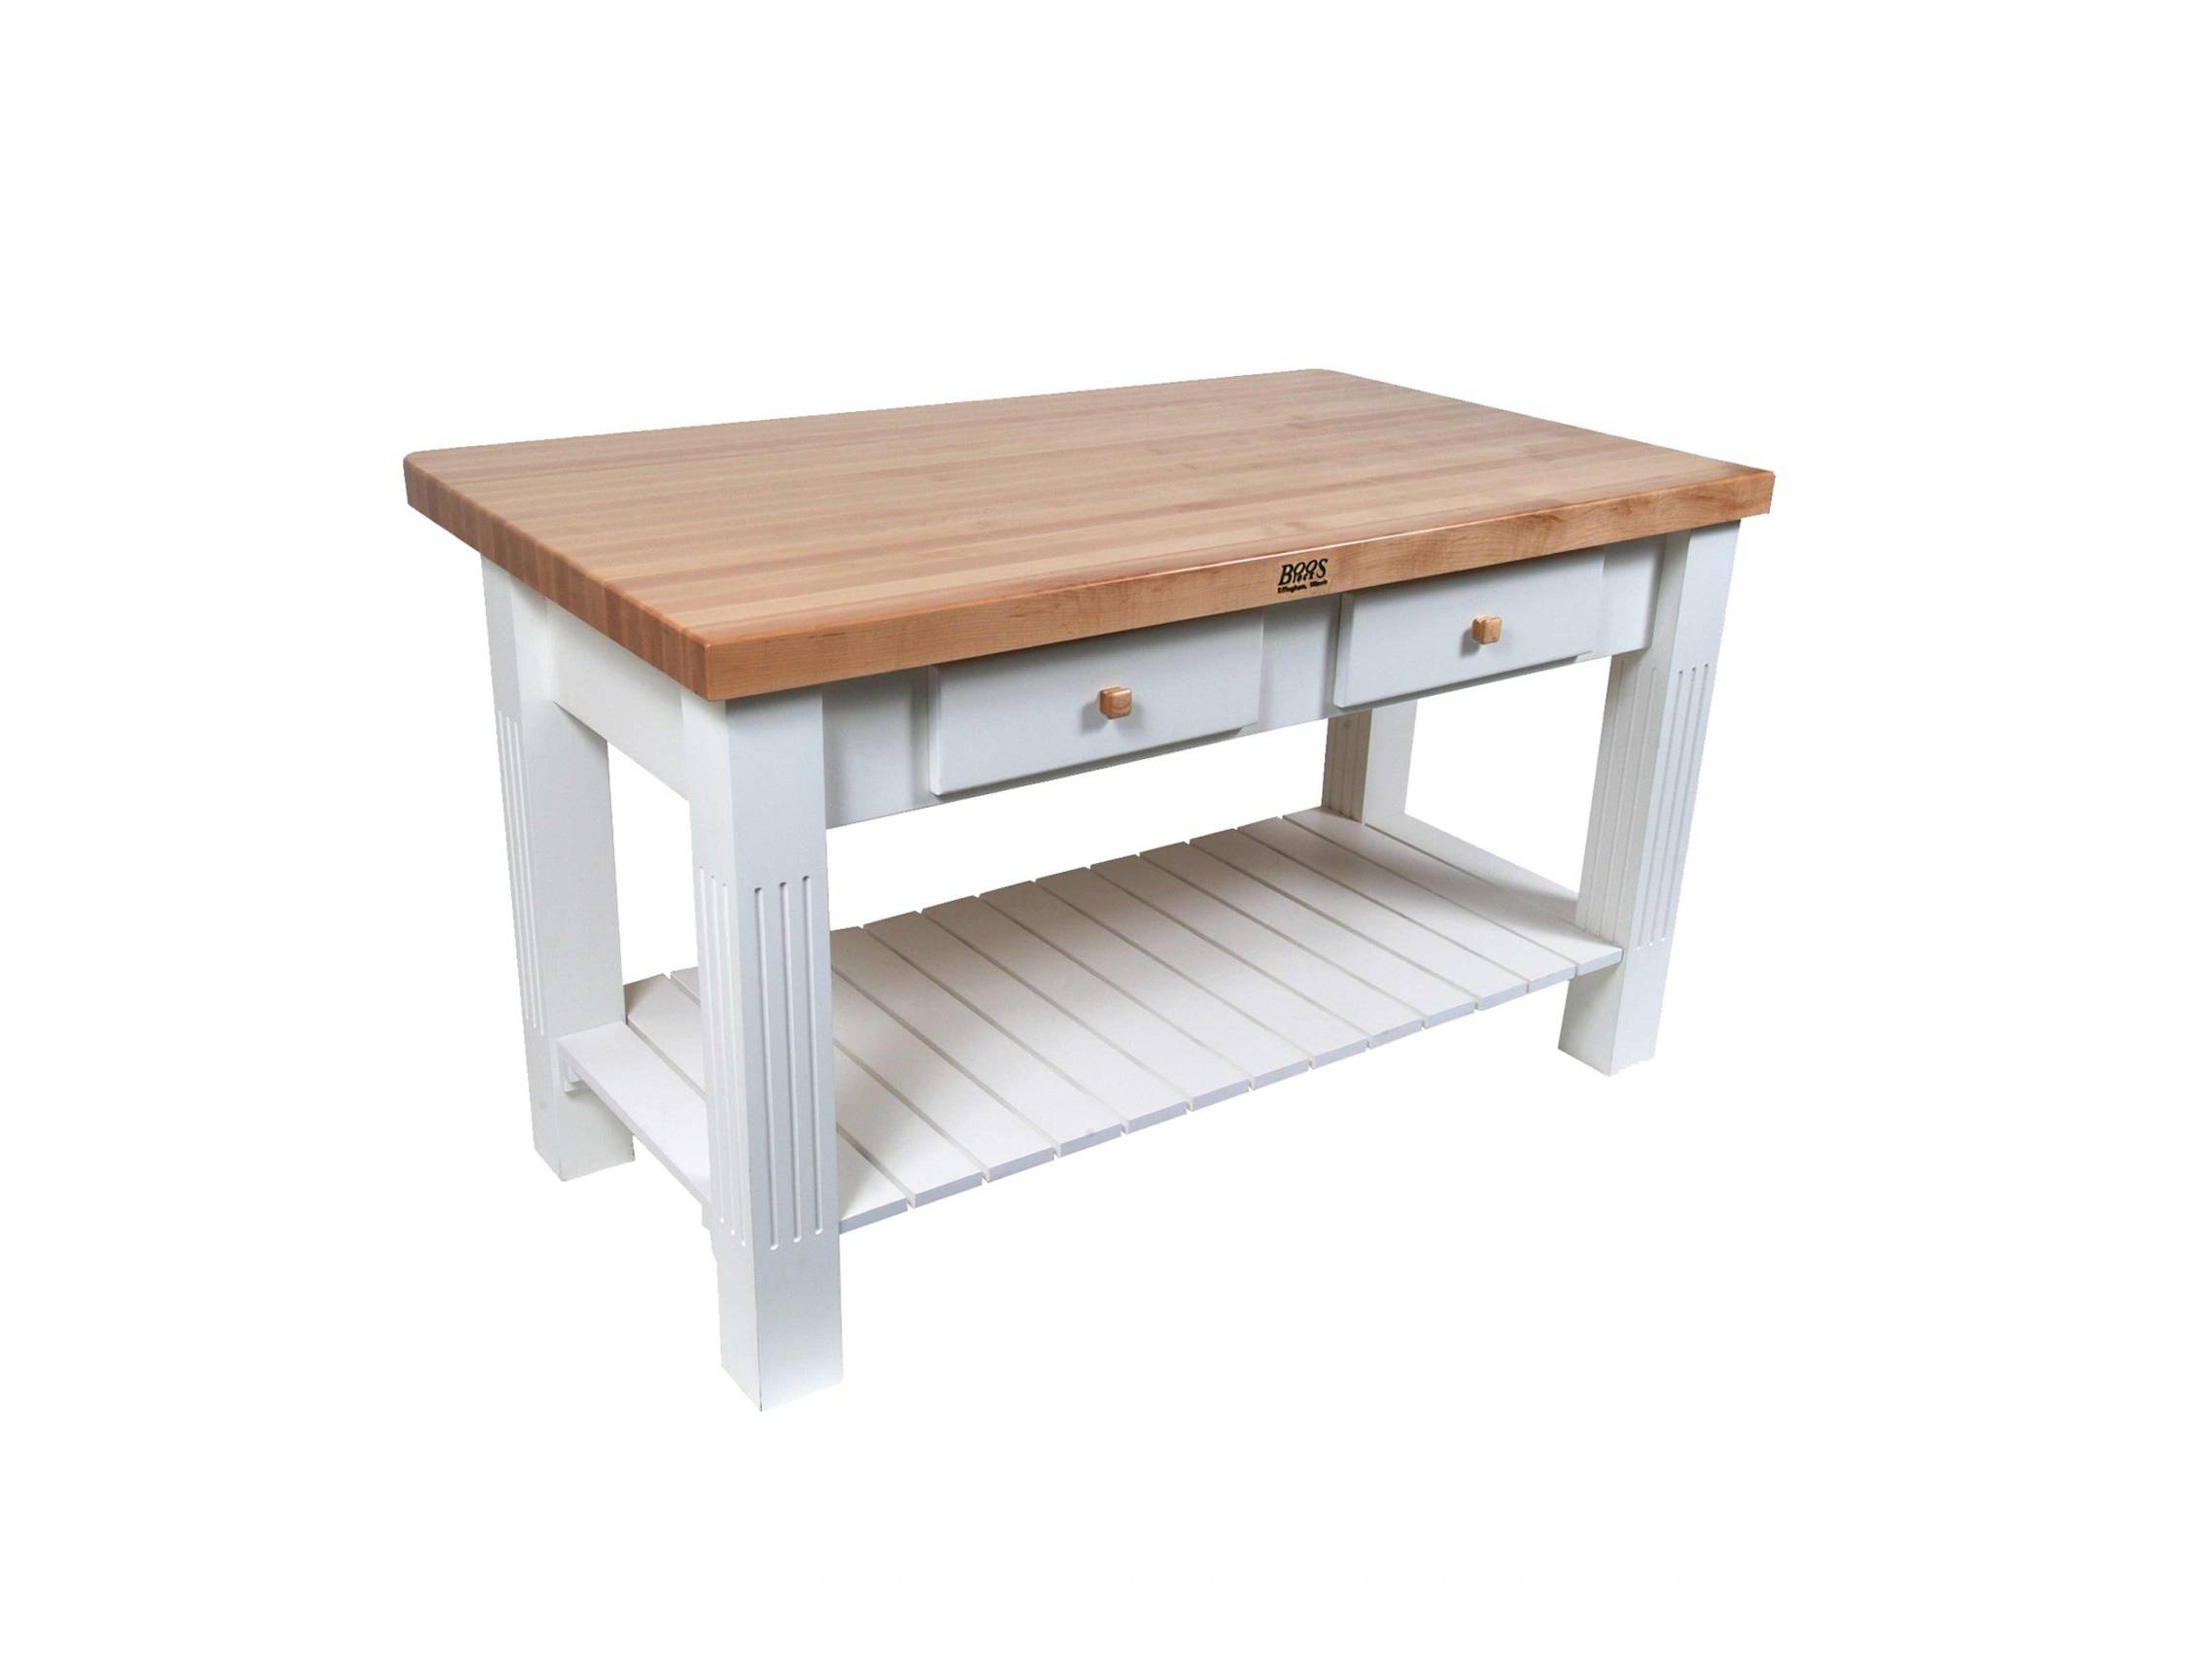 Boos® Maple Grazzi Table mit Langholzplatte inkl. umklappbarem Plattenteil (ca. 20cm), unterer Ablage und Utensilienschubladen 39